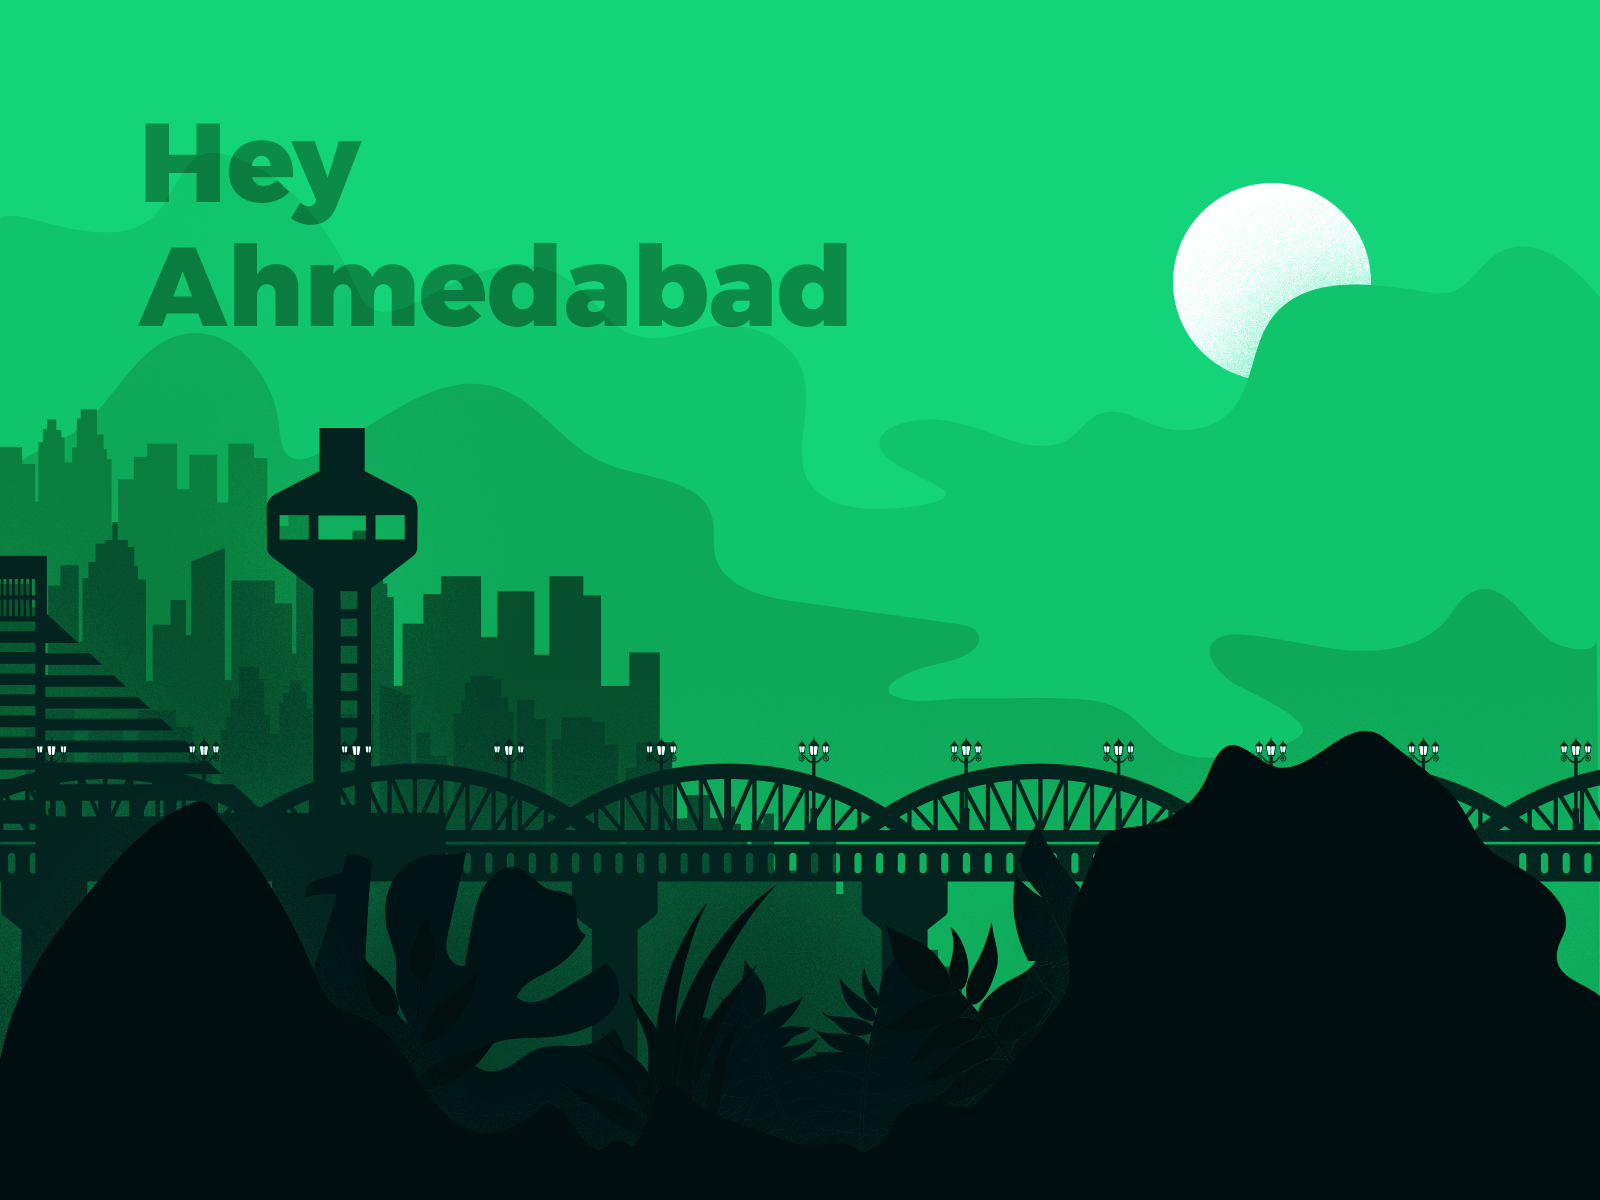 Ahmedabad illustration